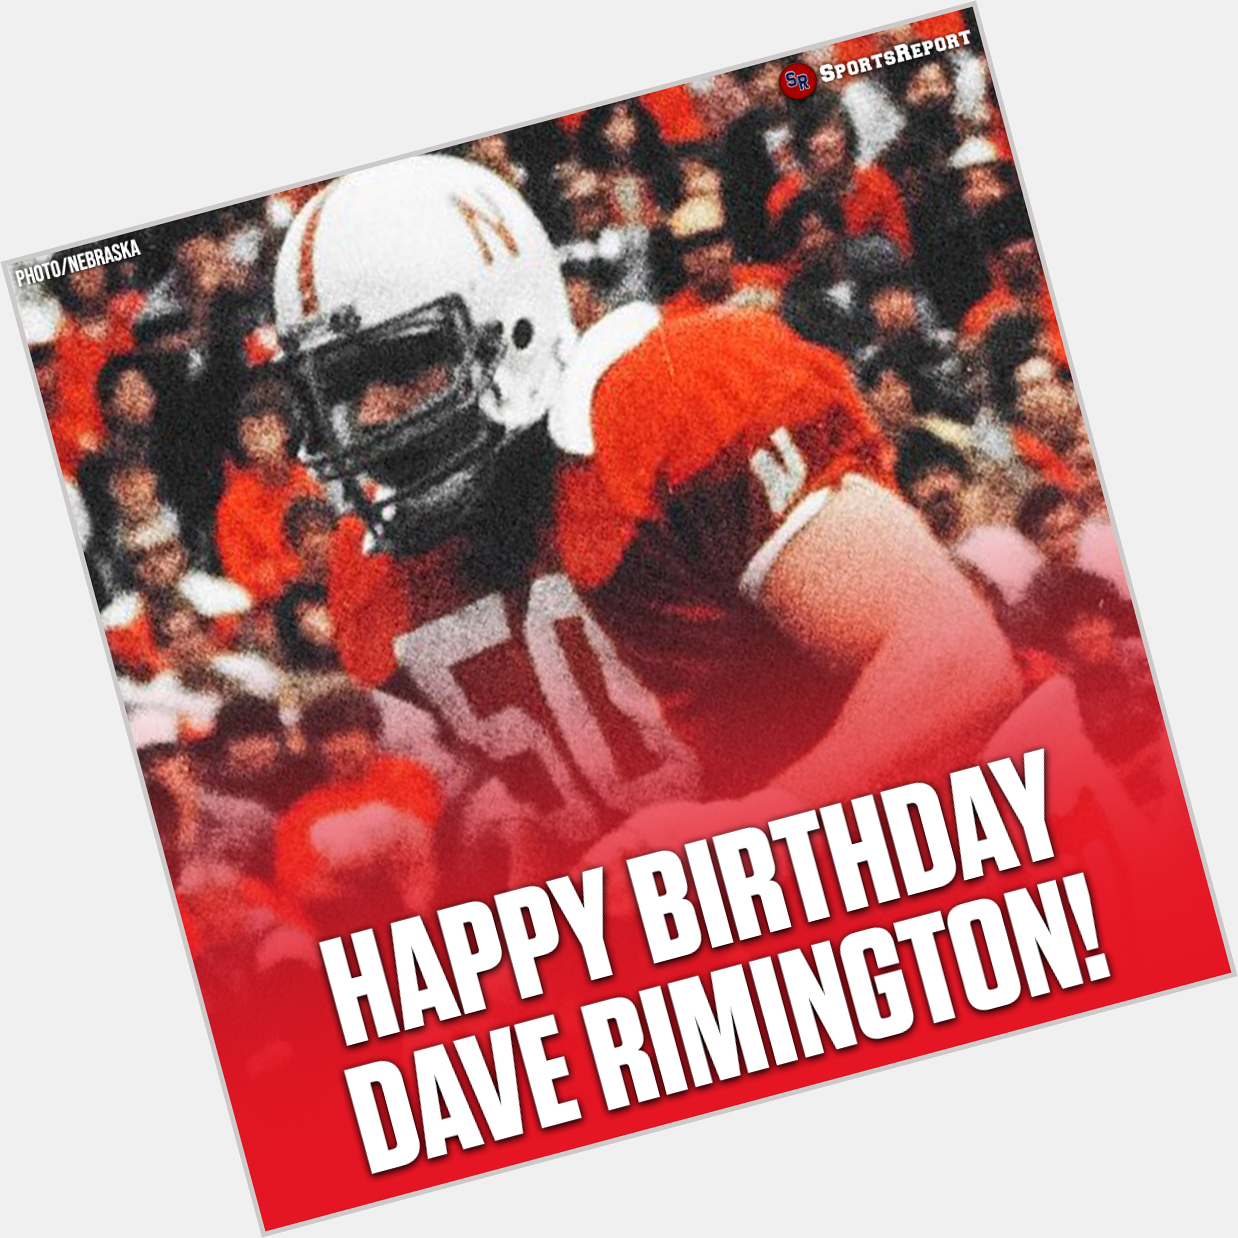  Fans, let\s wish Legend Dave Rimington a Happy Birthday! 